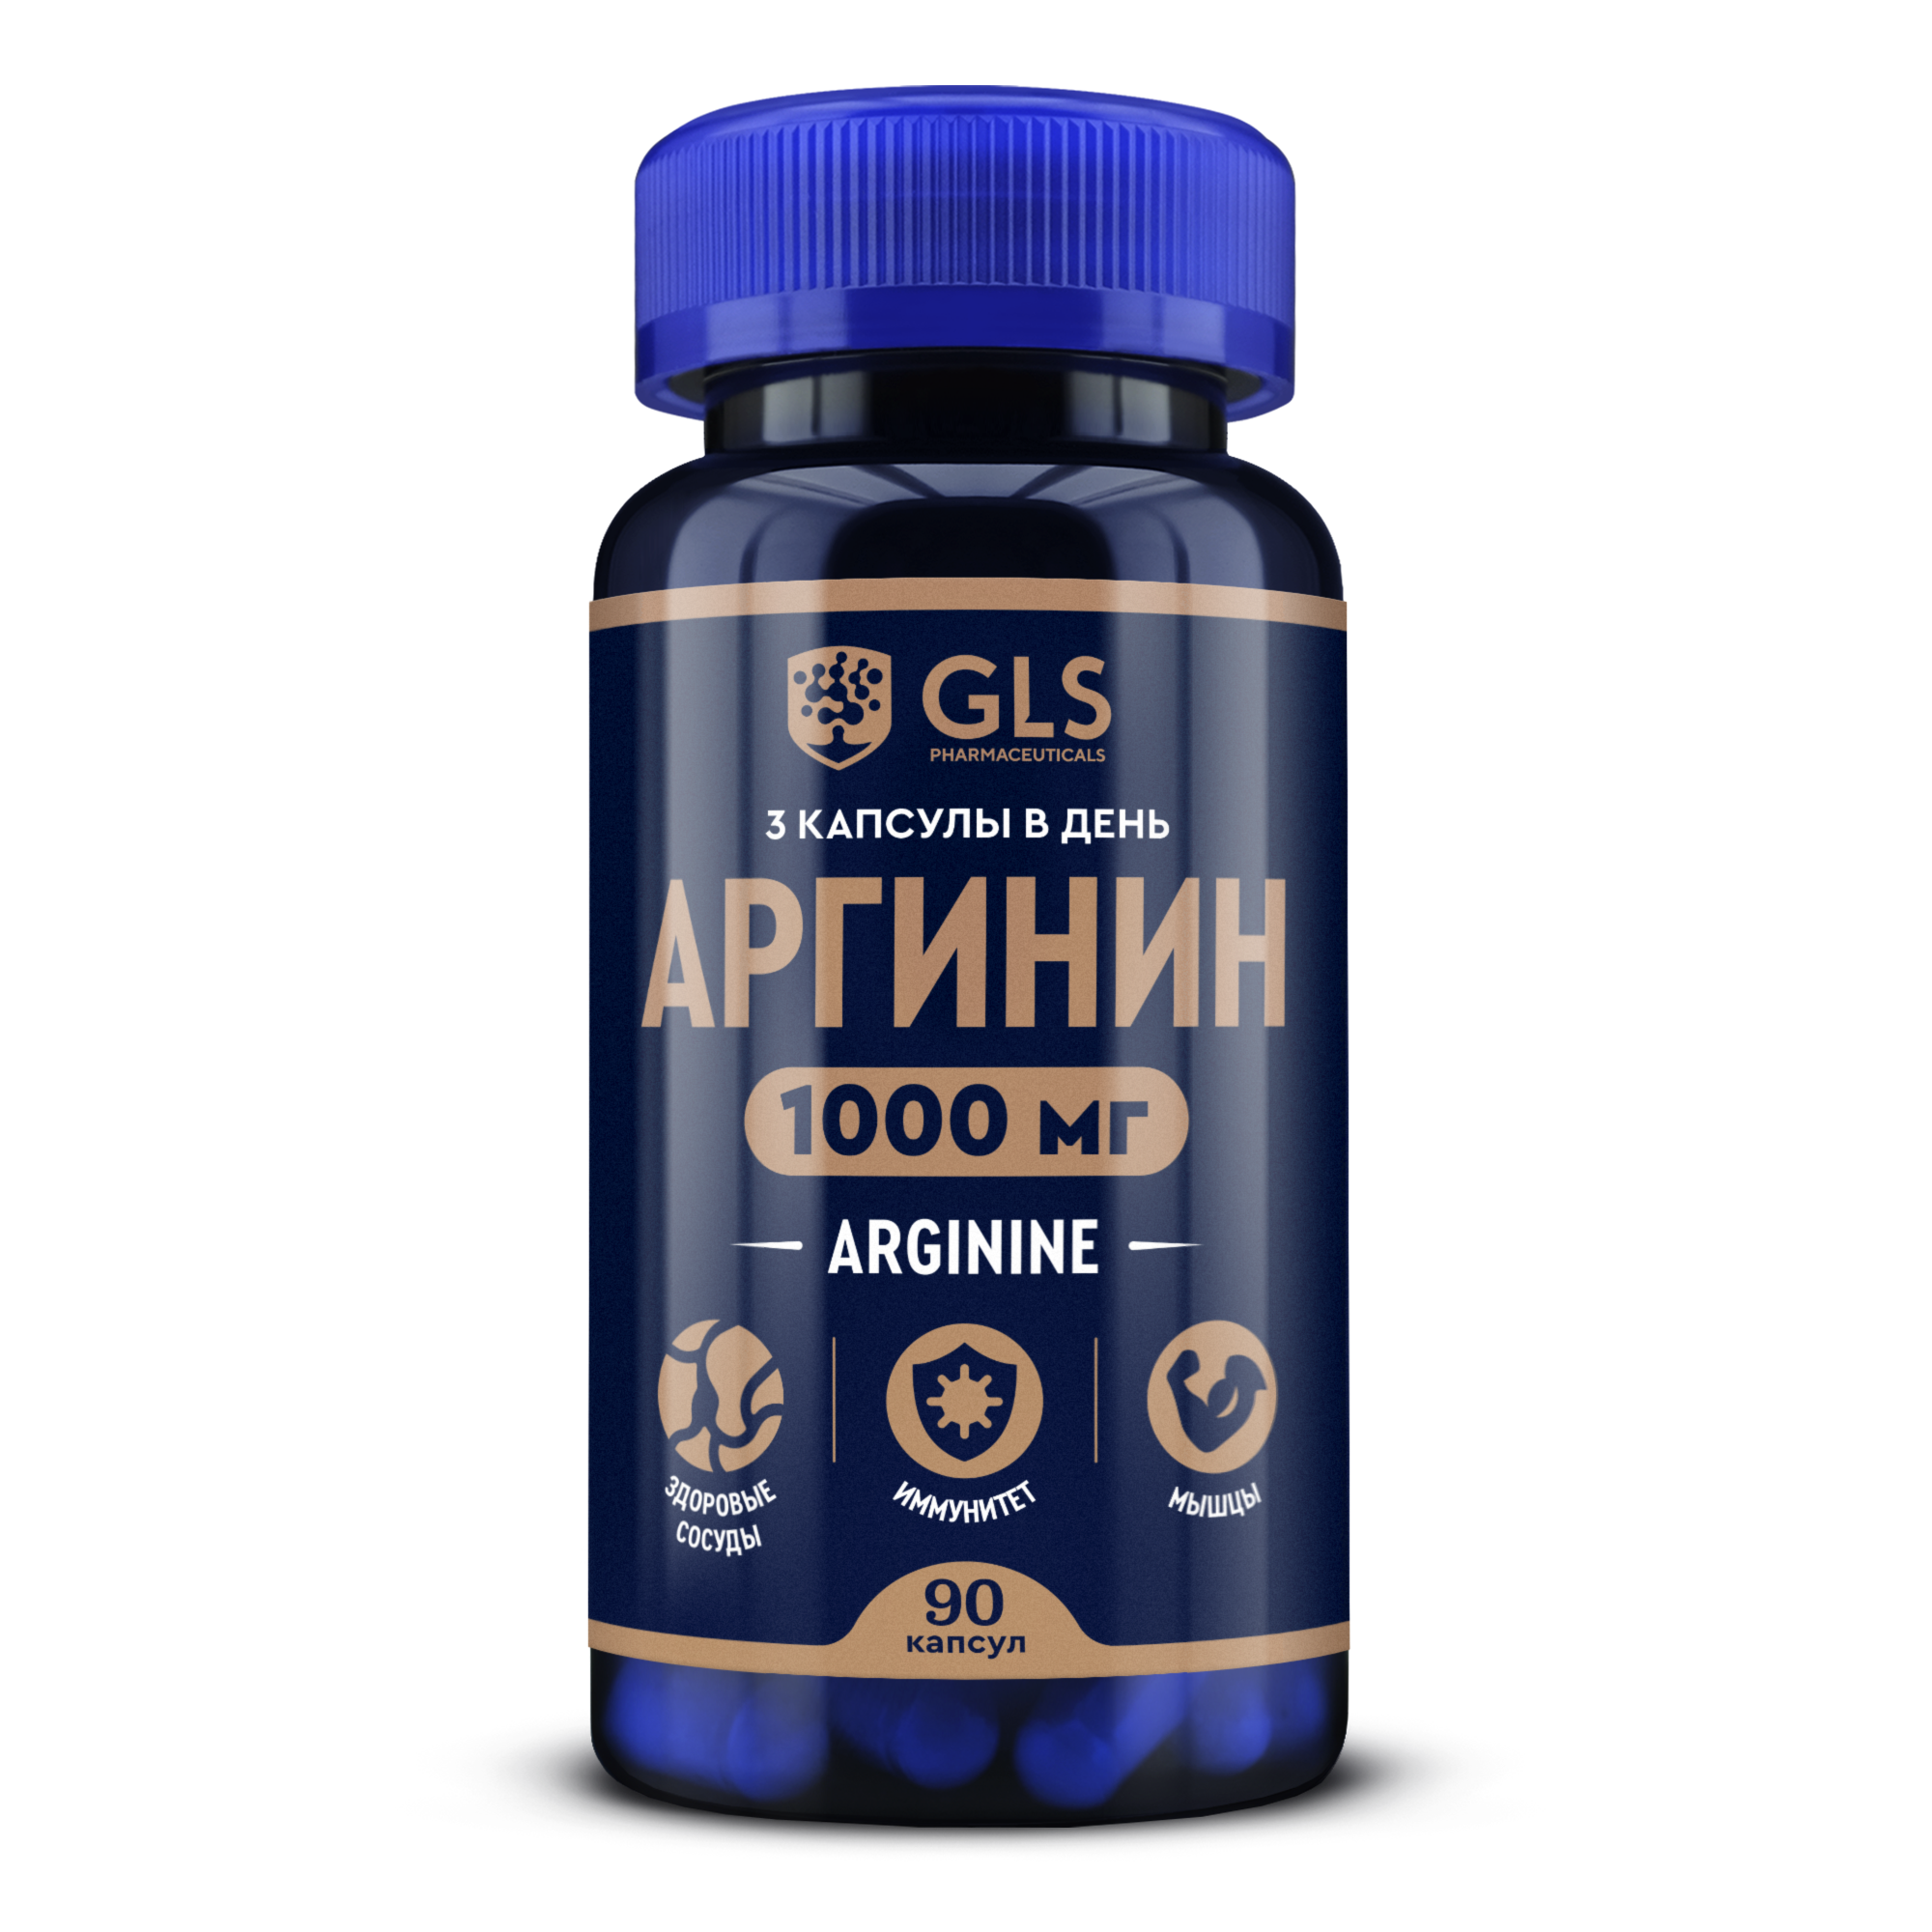 Аминокислота Аргинин 1000 (L-arginine) GLS pharmaceuticals для набора массы, 90 капсул